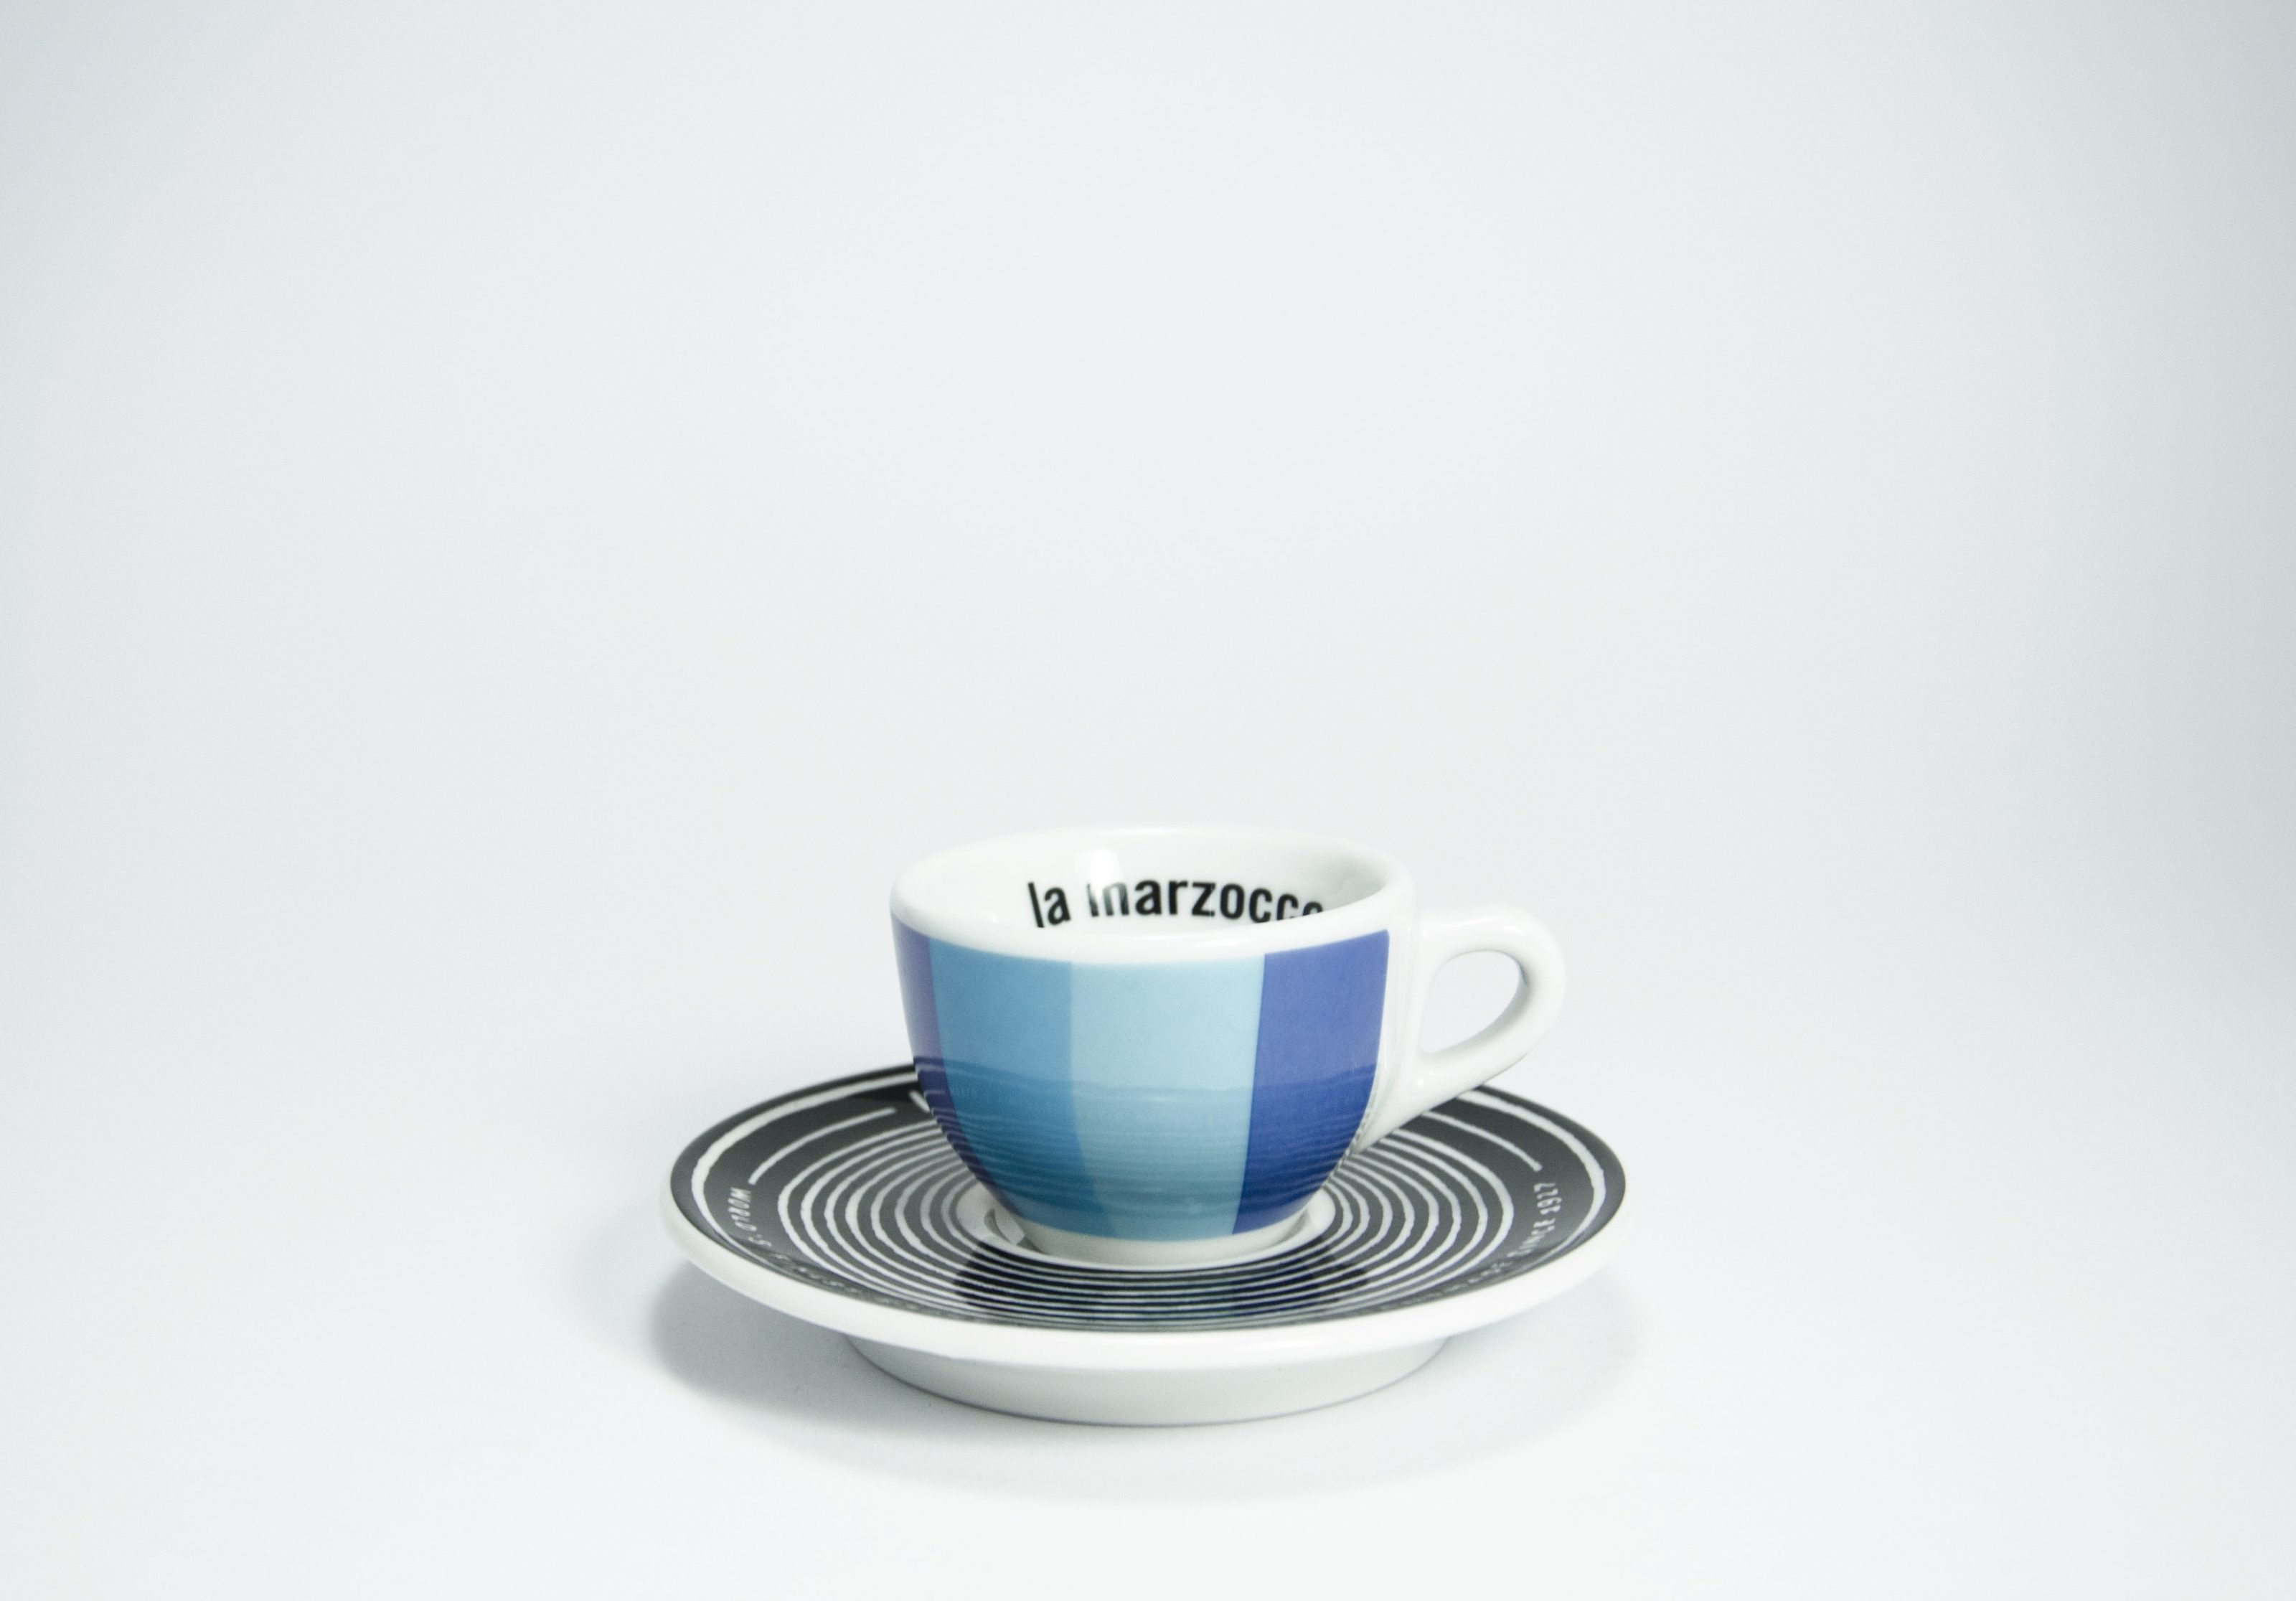 Personalized Espresso Cup